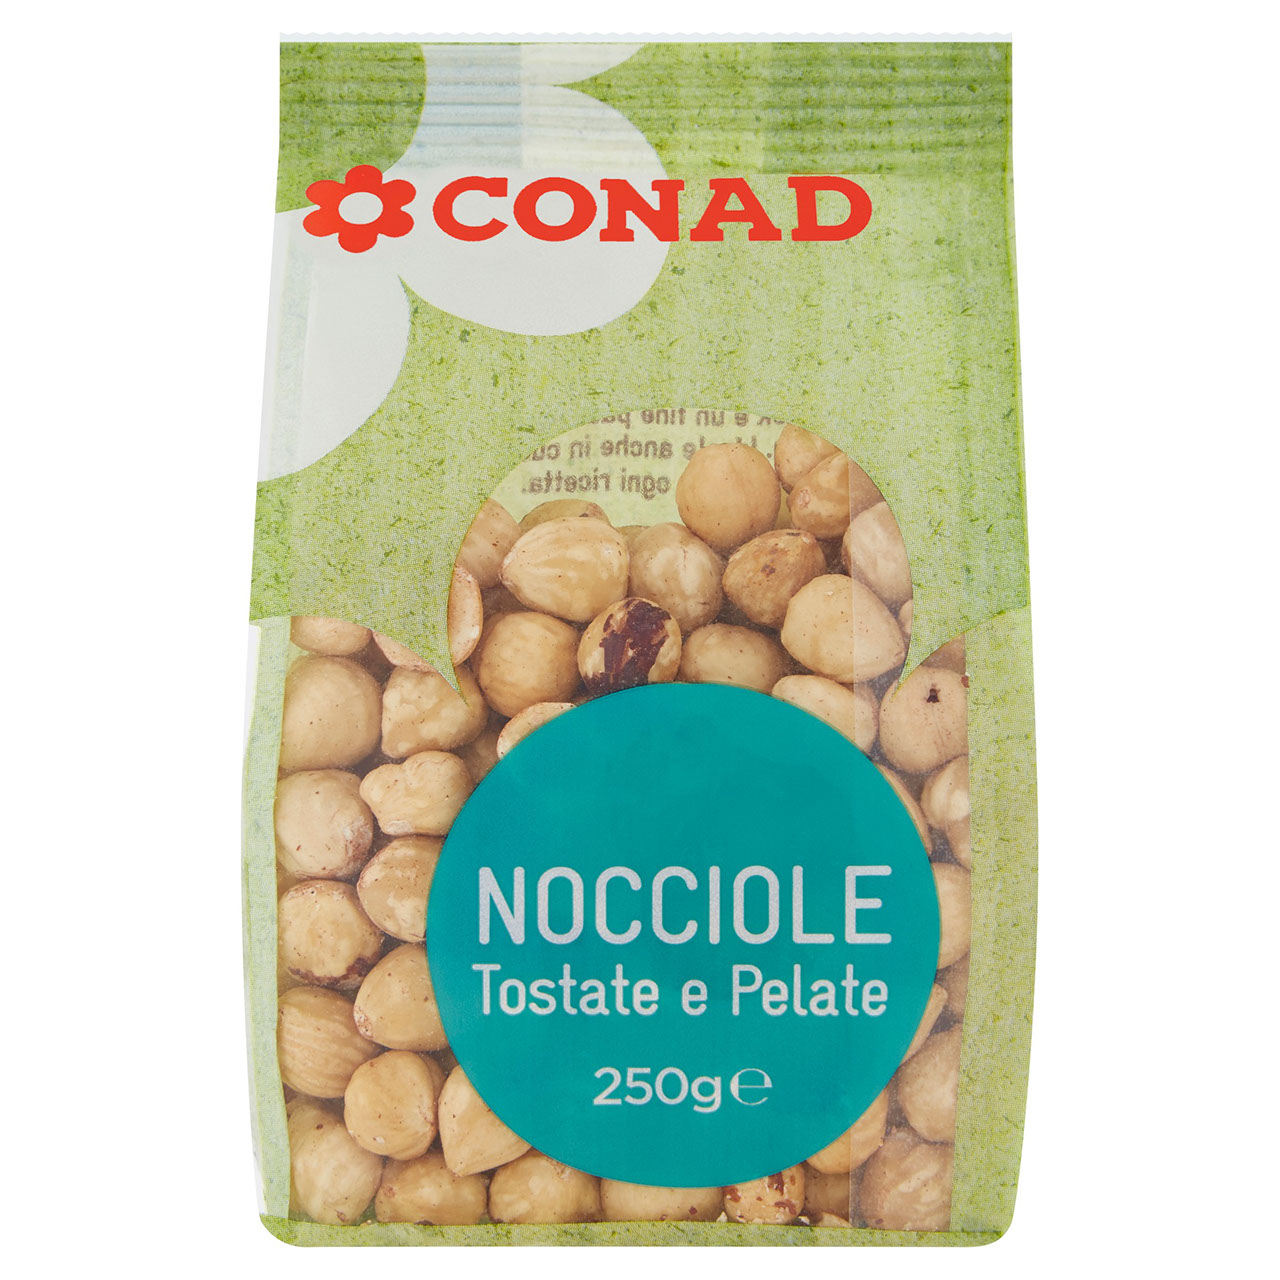 Nocciole Tostate e Pelate Conad in vendita online